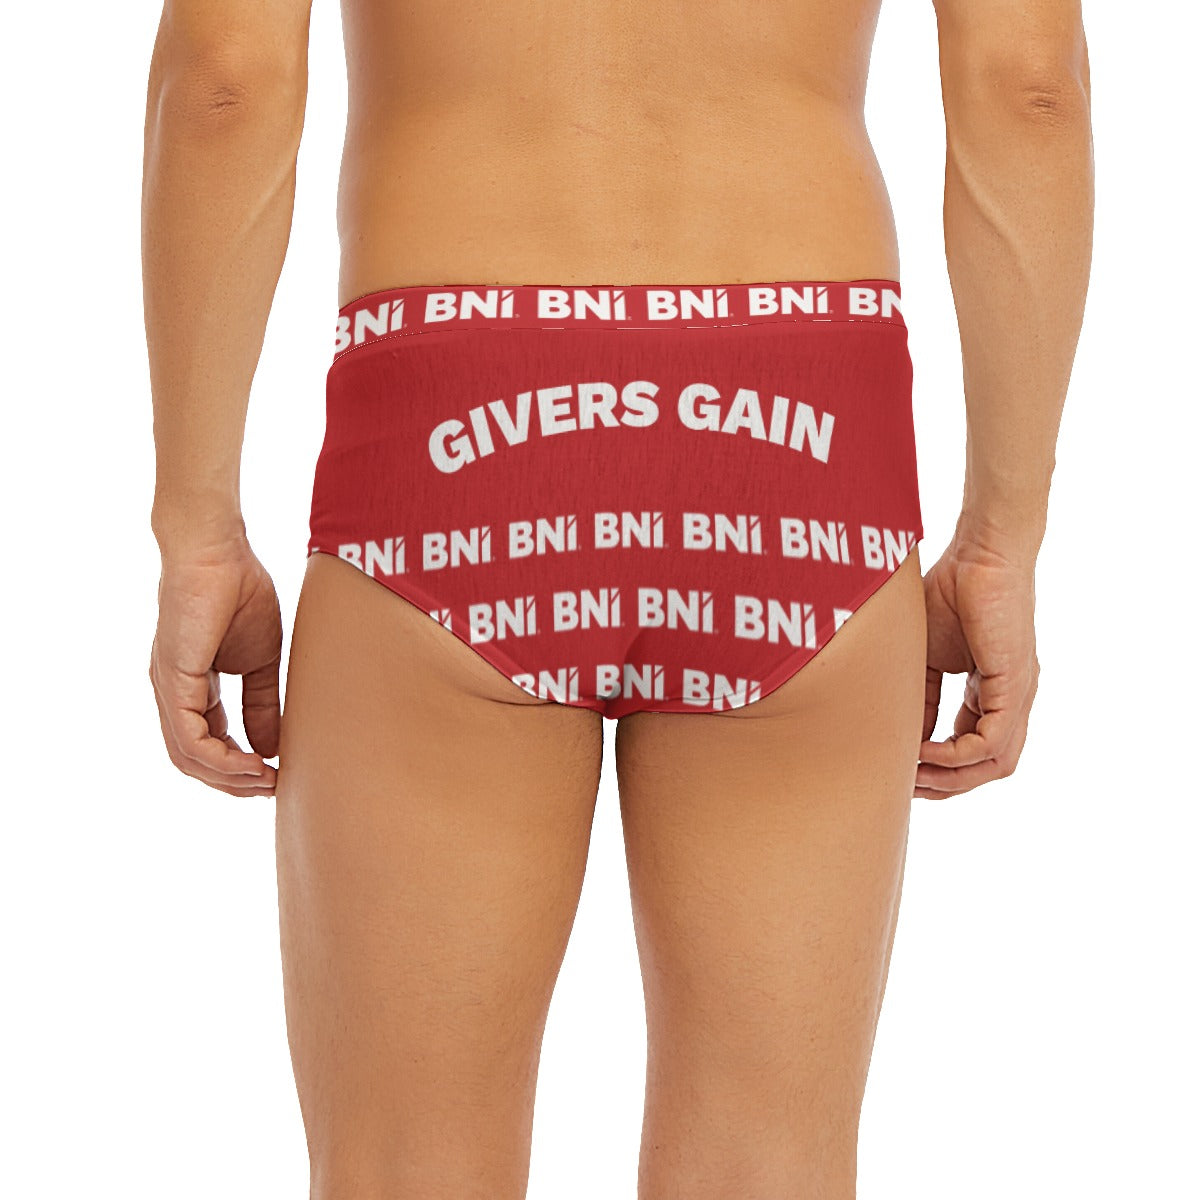 BNI Pants - Low-rise Underwear